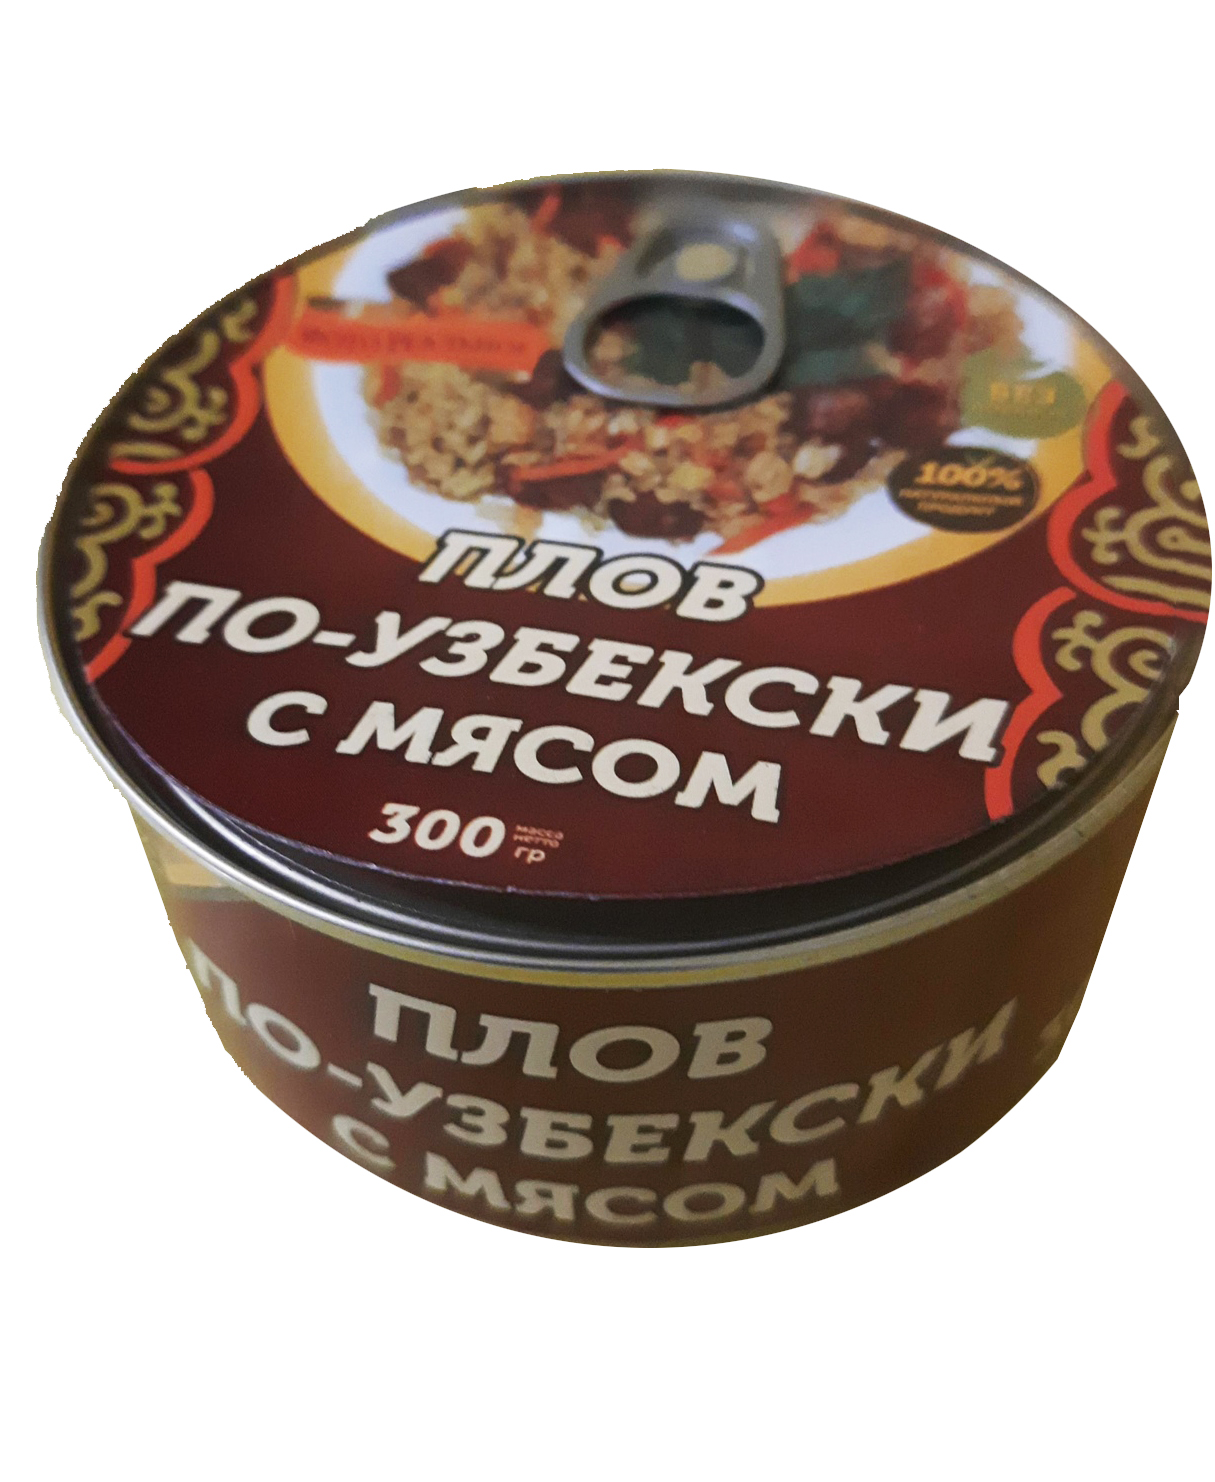 Плов по узбекски с мясом 300г ж\б ключ ООО Домашние консервы